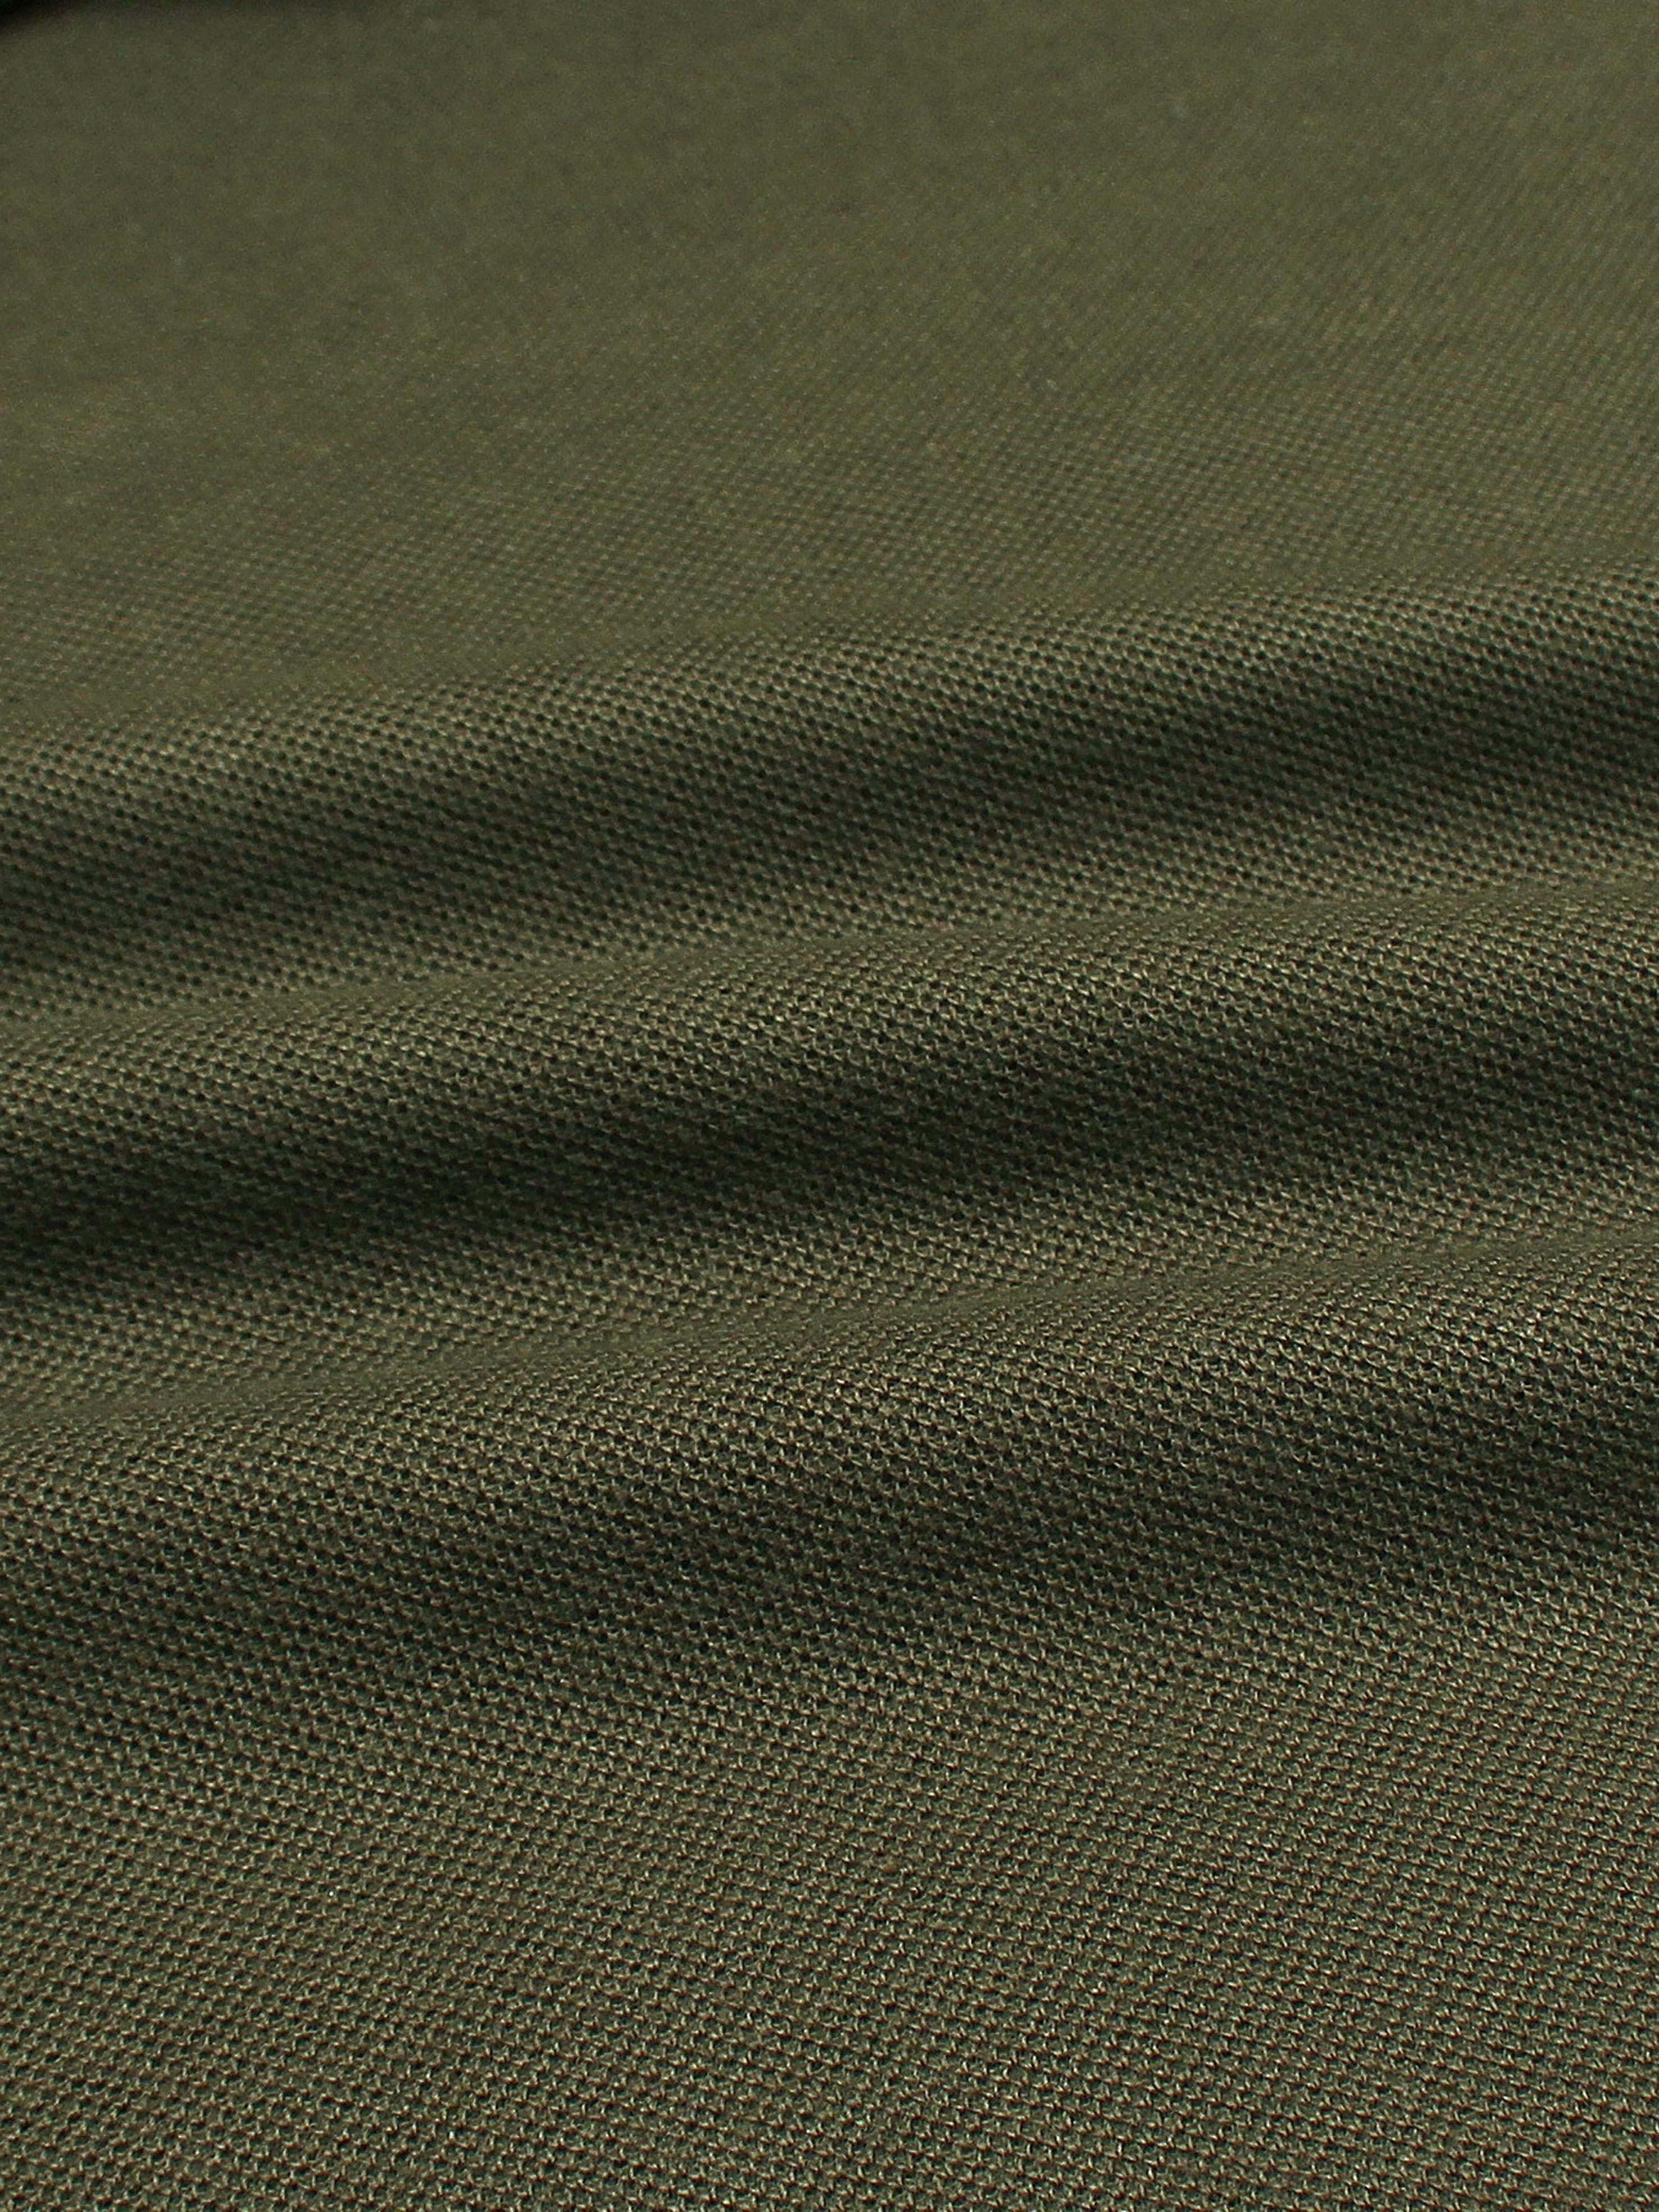 MNCLR soft cotton green polo shirt(00320)